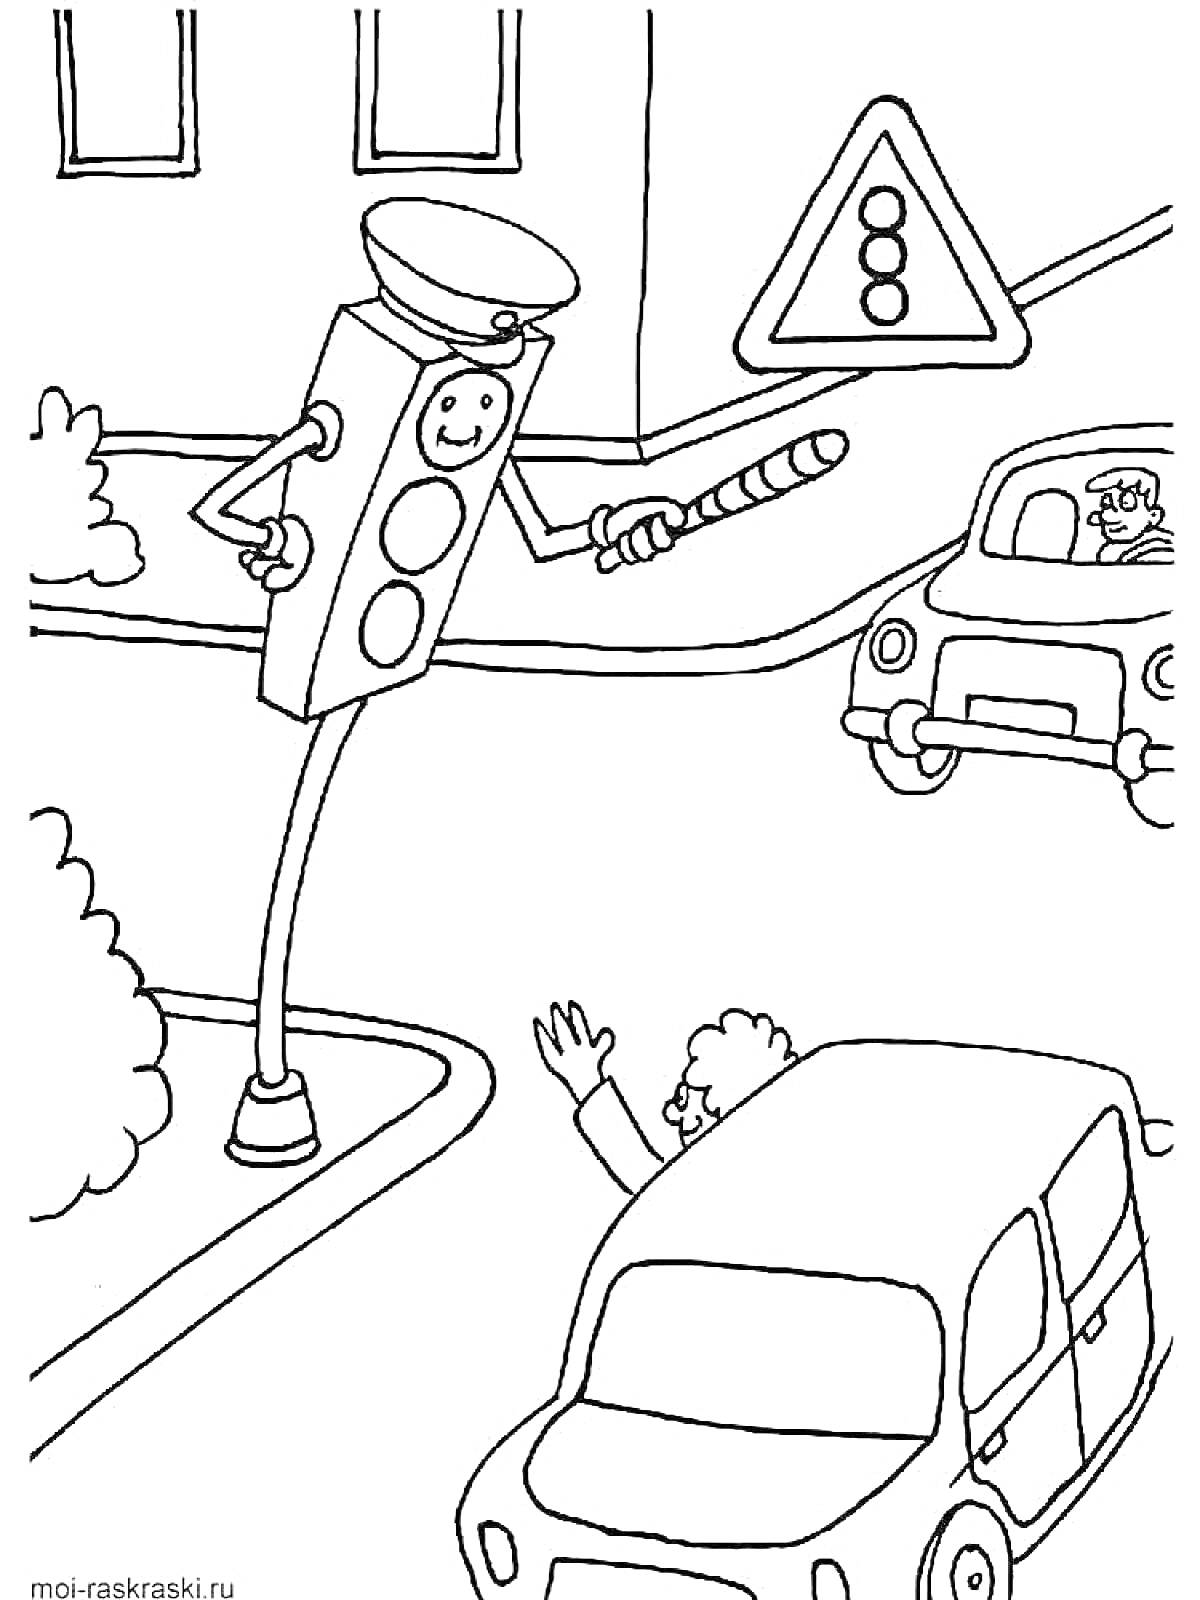 Светофор-полицейский регулирует движение рядом с дорожным знаком и машинами